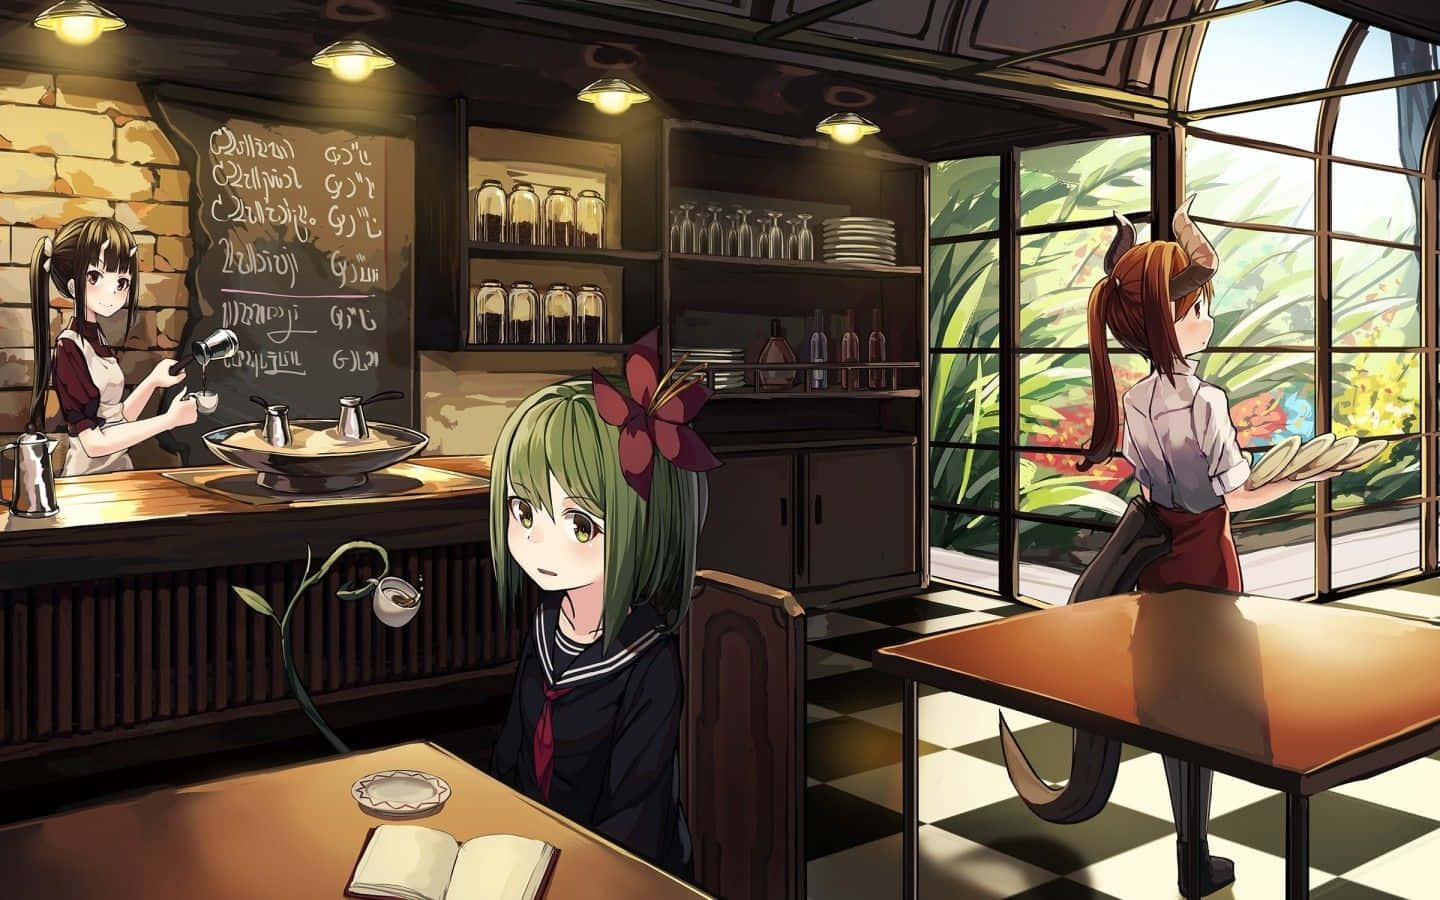 Desideriun Caffè In Un'atmosfera Unica? Visita Cafe Anime, Dove Vengono Servite Le Tue Bevande Preferite In Un Vivace Ambiente Ispirato Agli Anime! Sfondo